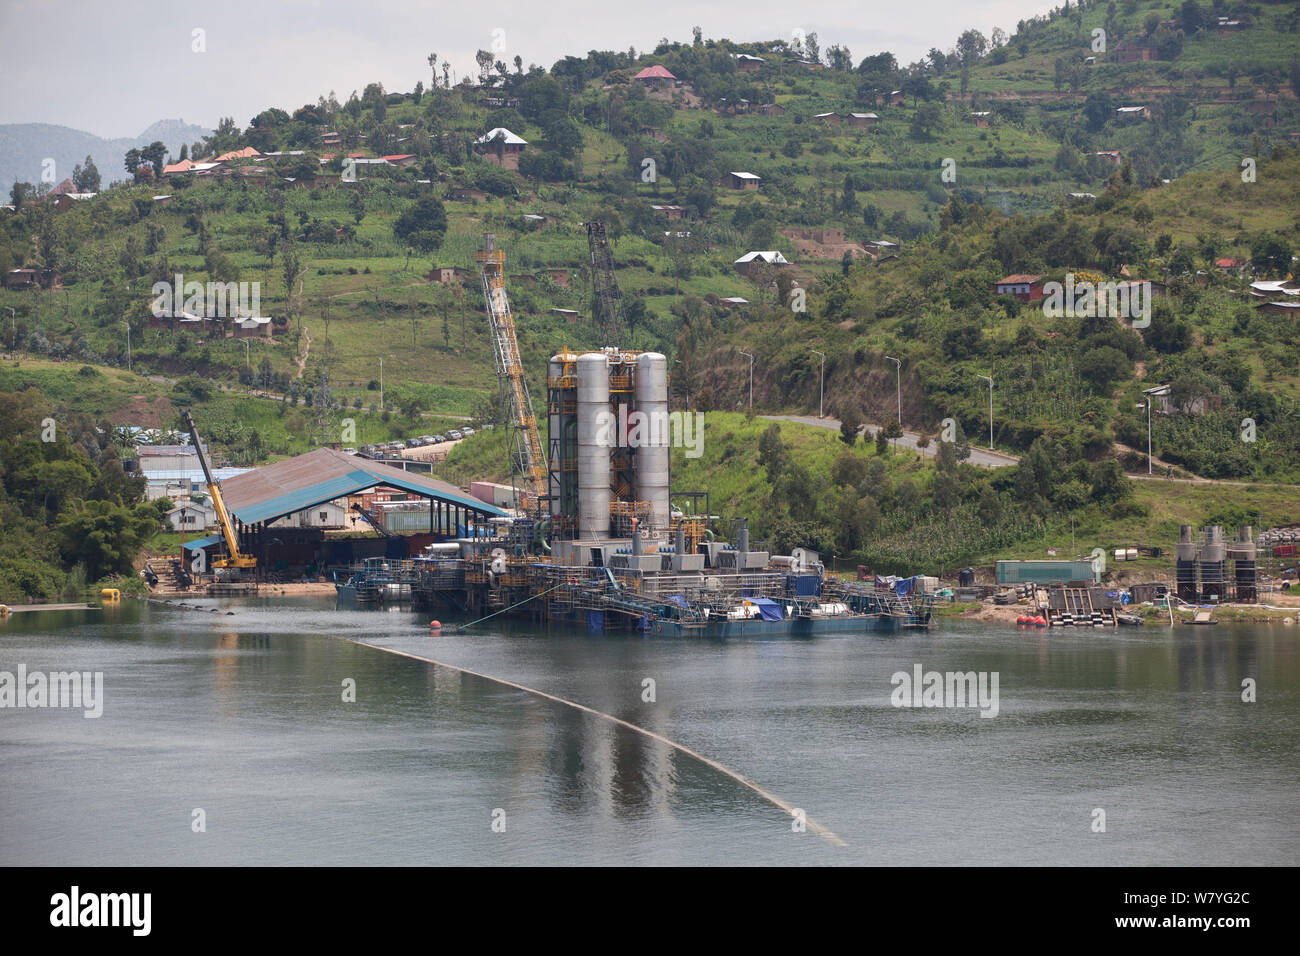 Planta de biogás Kivuwatt en construcción. La planta elimina metano de las aguas del Lago Kivu y poder tres genrators para producir 26MW de electricidad. Kibuye, Rwanda, noviembre de 2014. Foto de stock